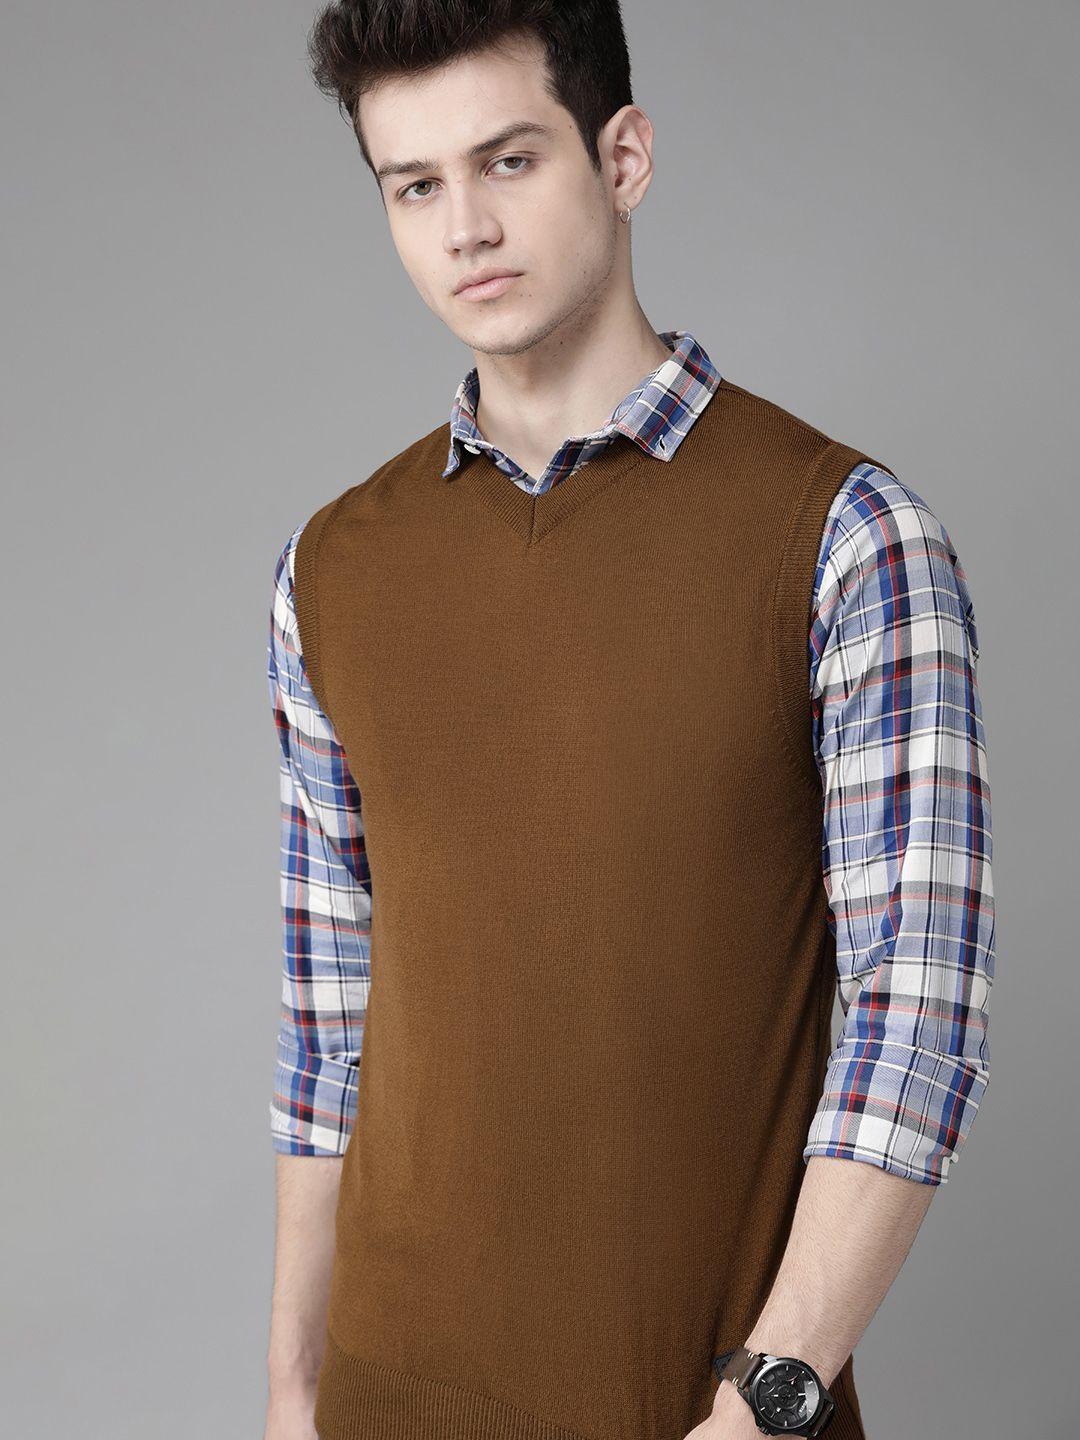 roadster-men-olive-brown-solid-sweater-vest